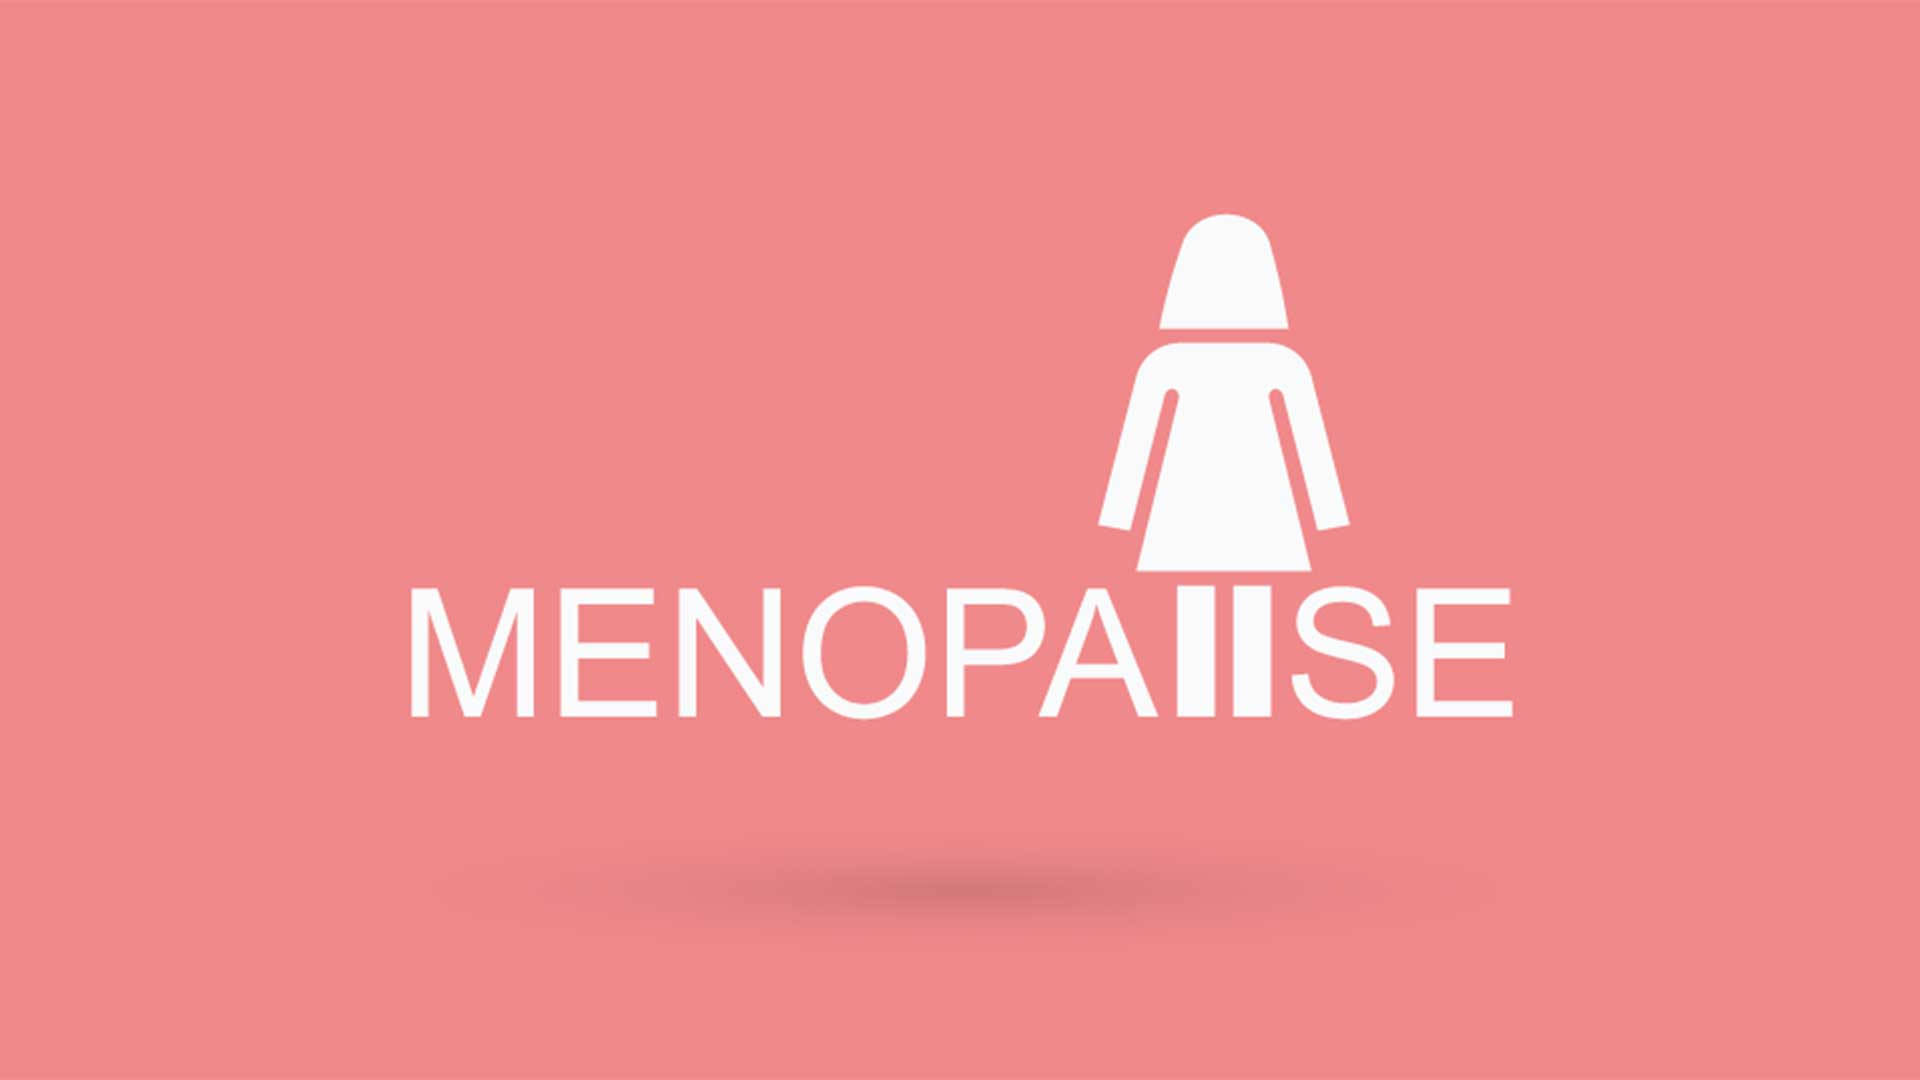 Menopausevektorgrafik Wallpaper